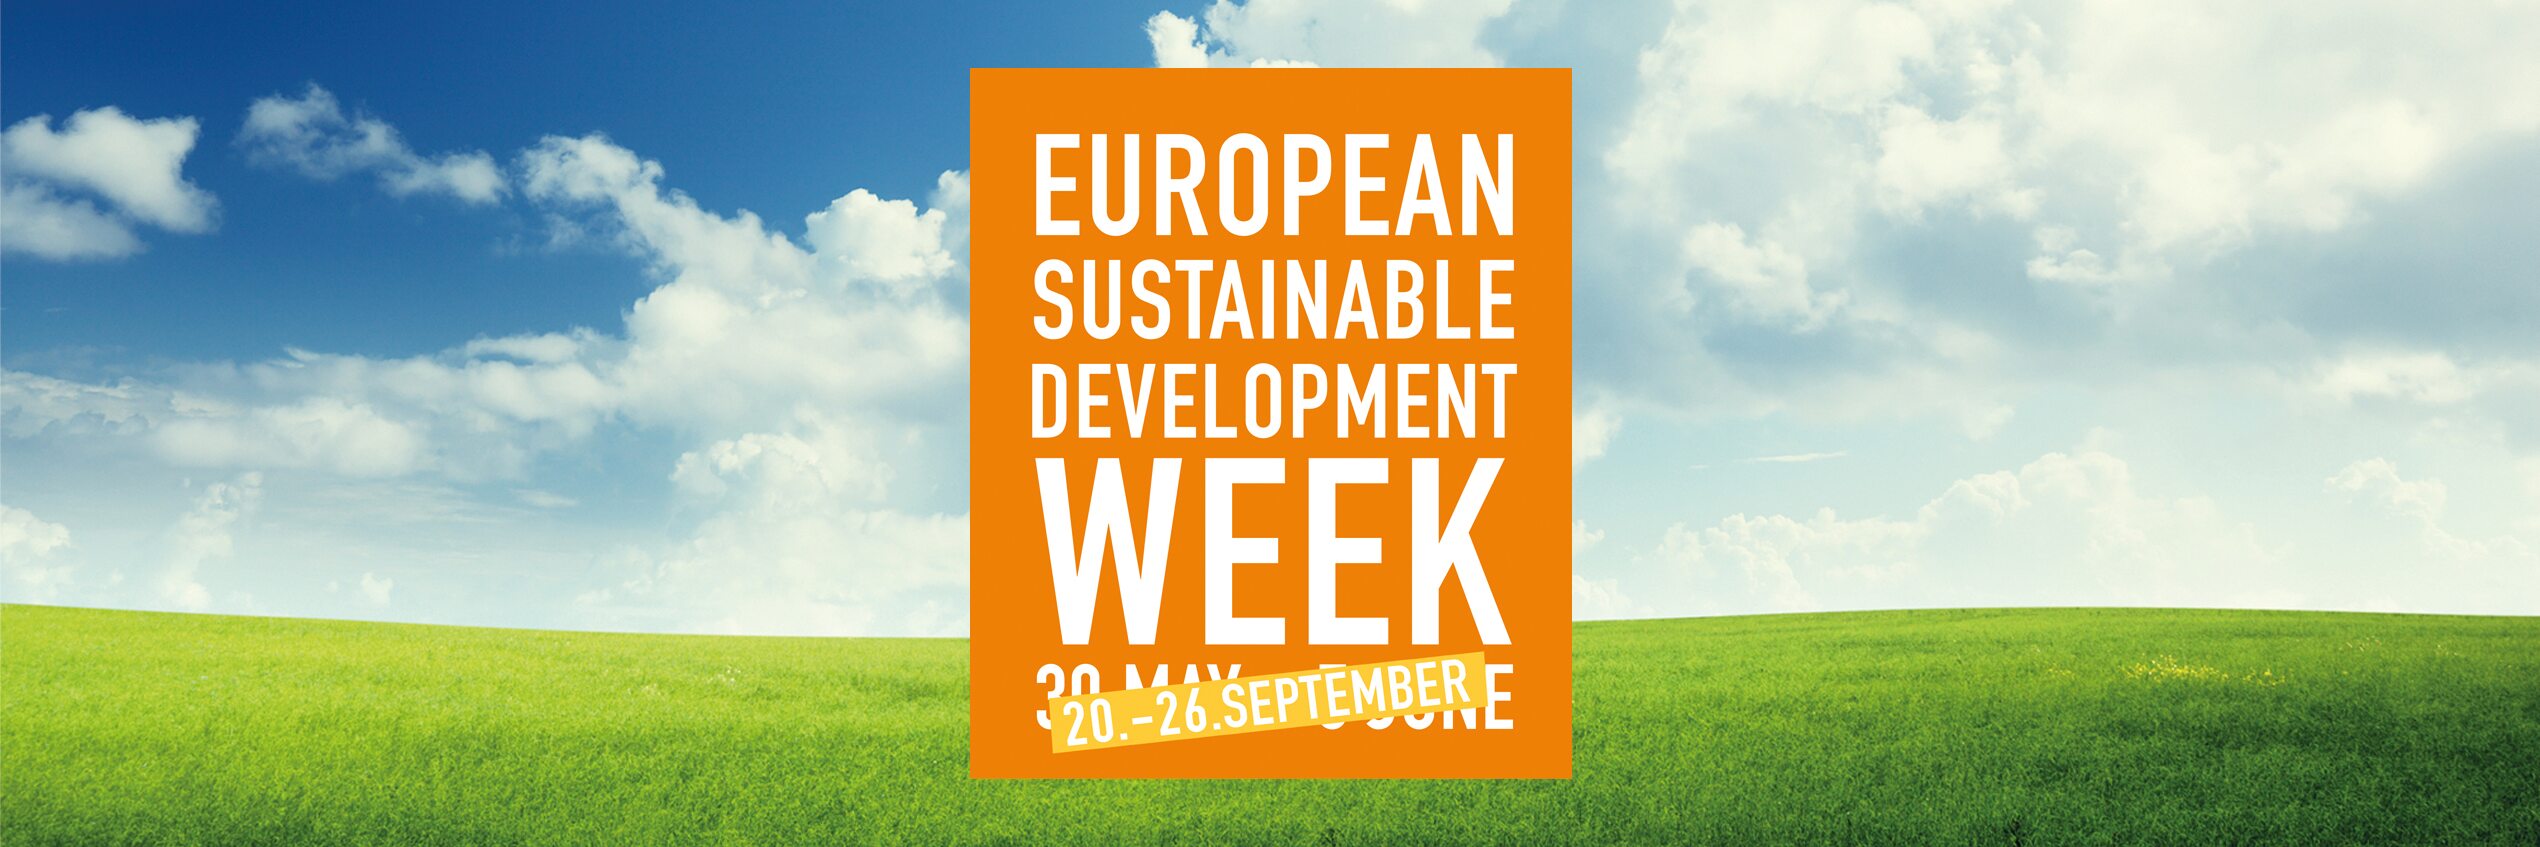 Diehl Metering uczestniczy w Europejskim Tygodniu Zrównoważonego Rozwoju